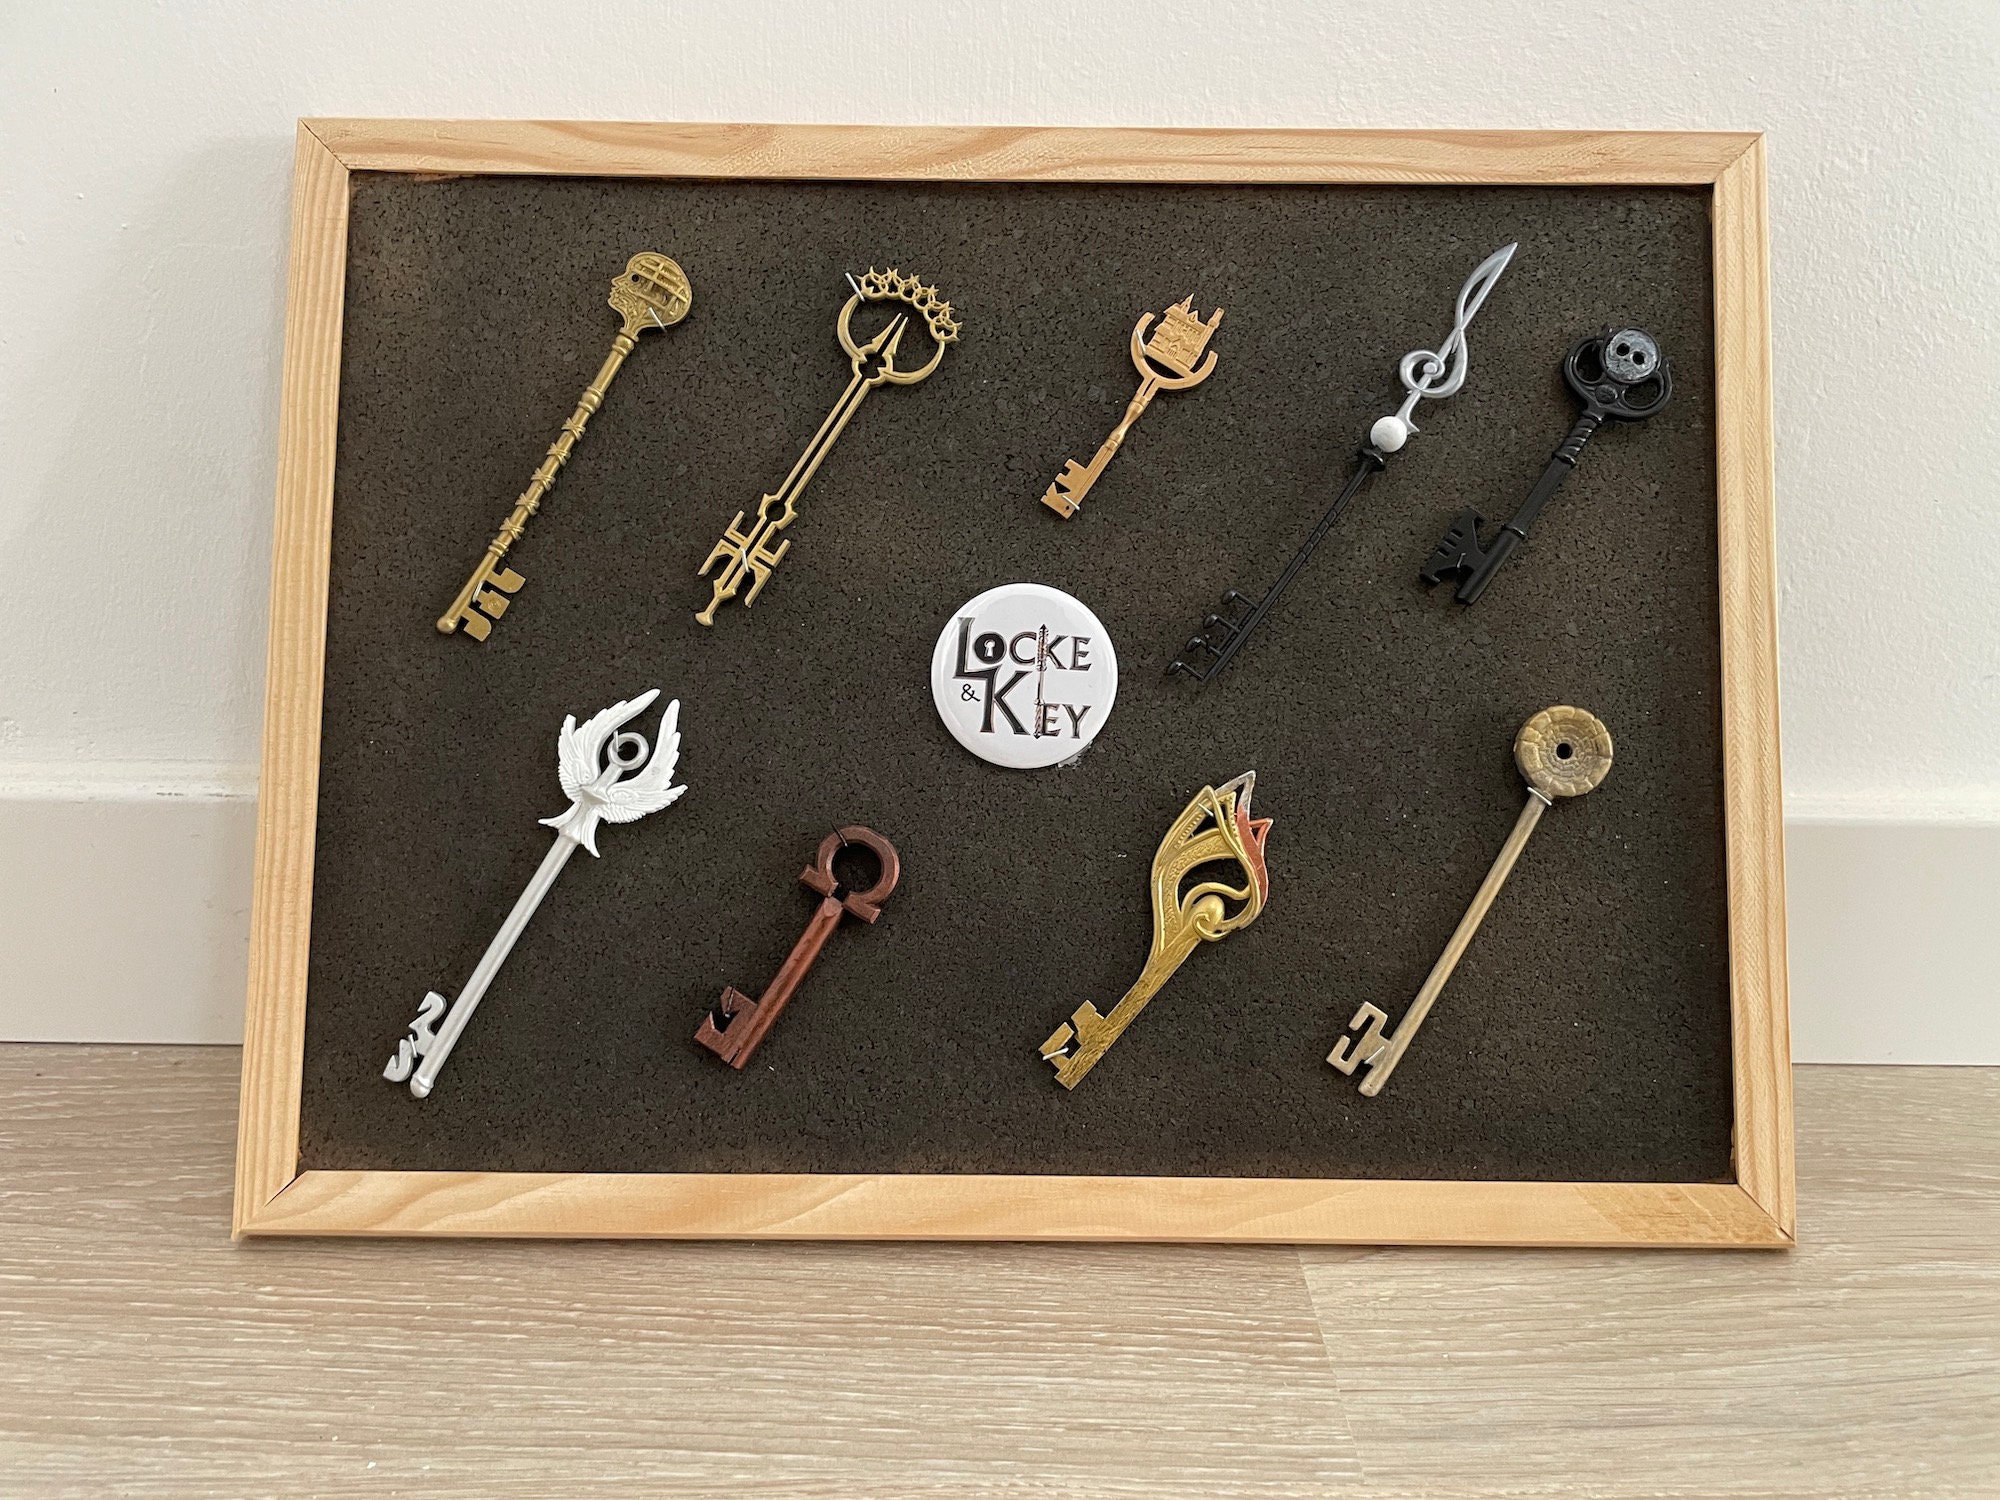 Locke and keys key - .de